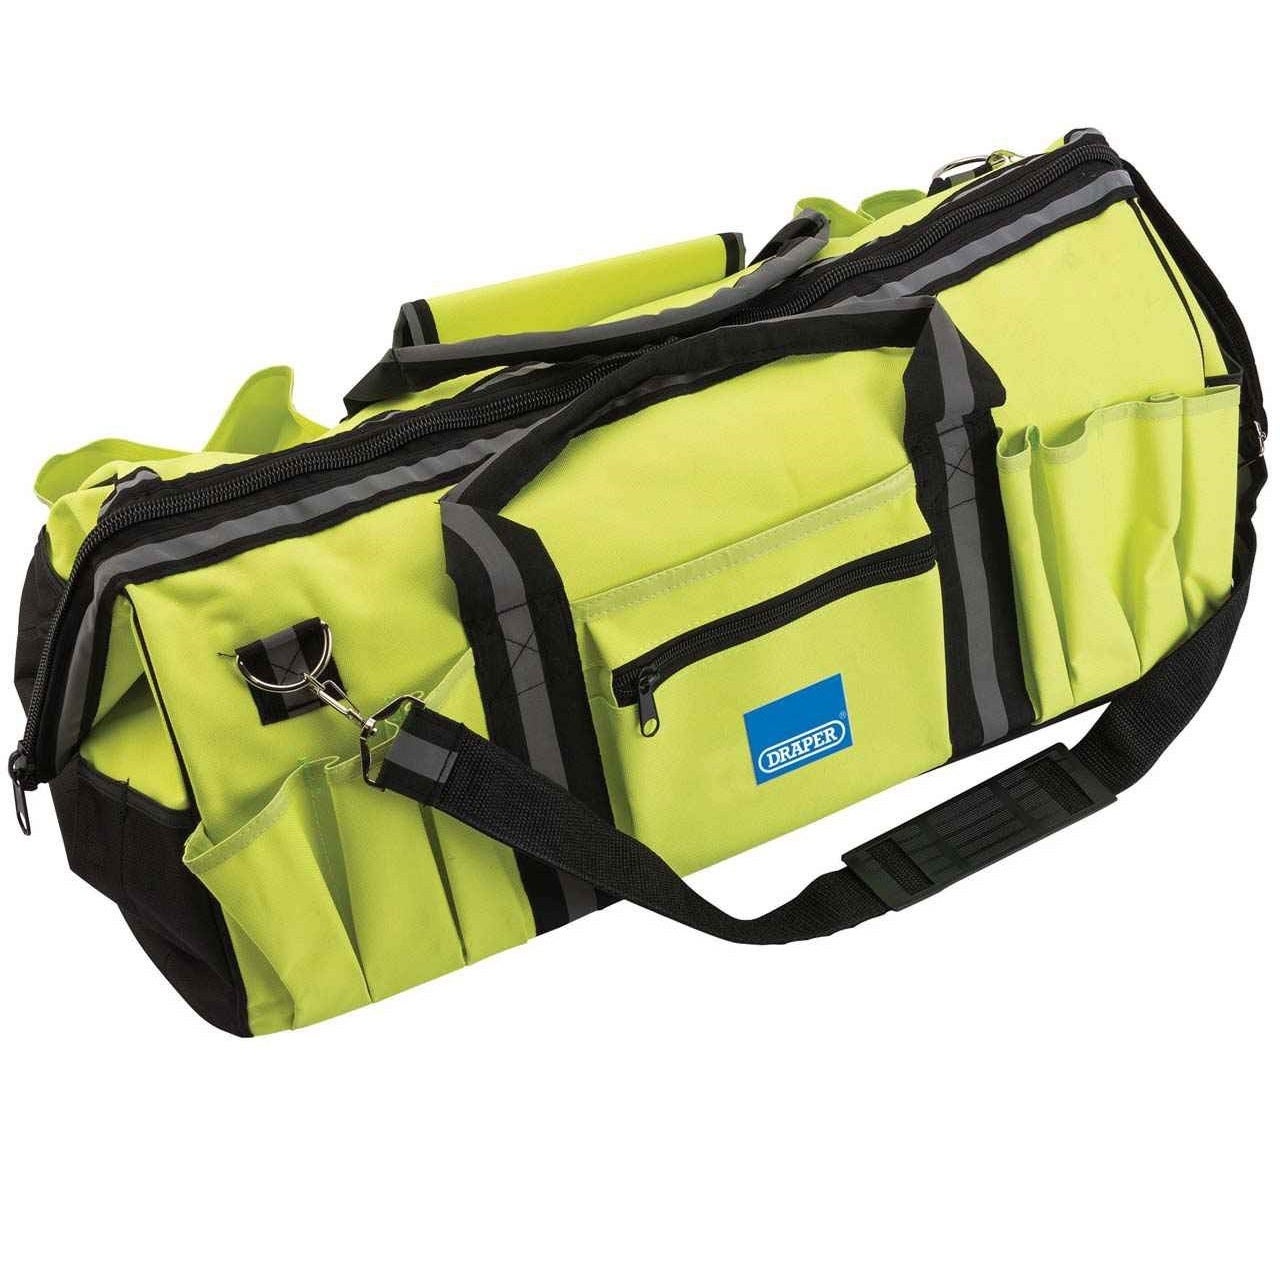 Draper Expert Hi-Viz Tool Bag Image